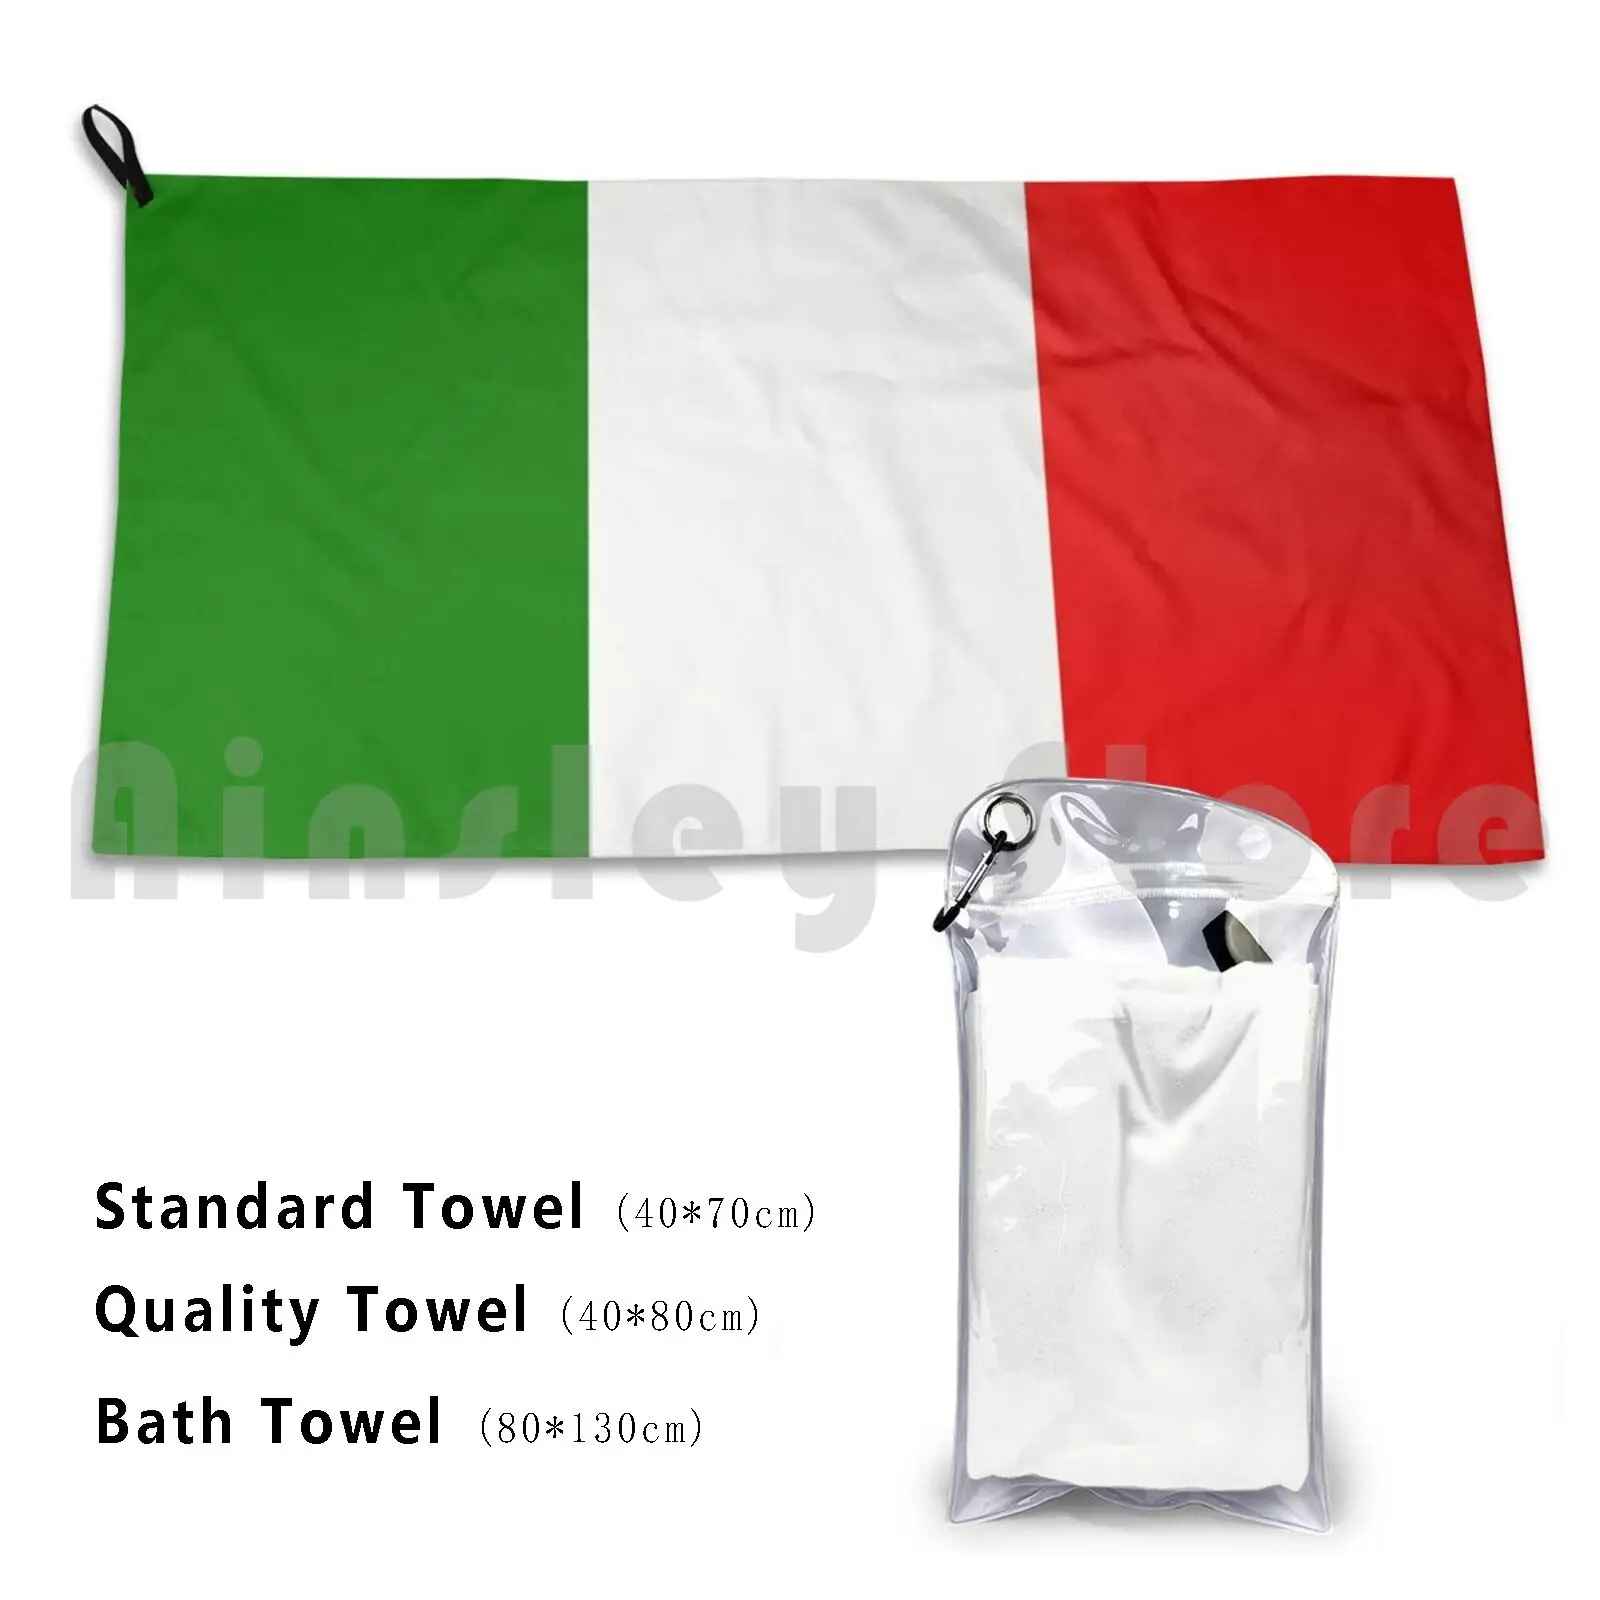 

Полотенце с итальянским флагом на заказ банное полотенце с итальянским флагом красные цвета полоски карта мира в Италии путешествия